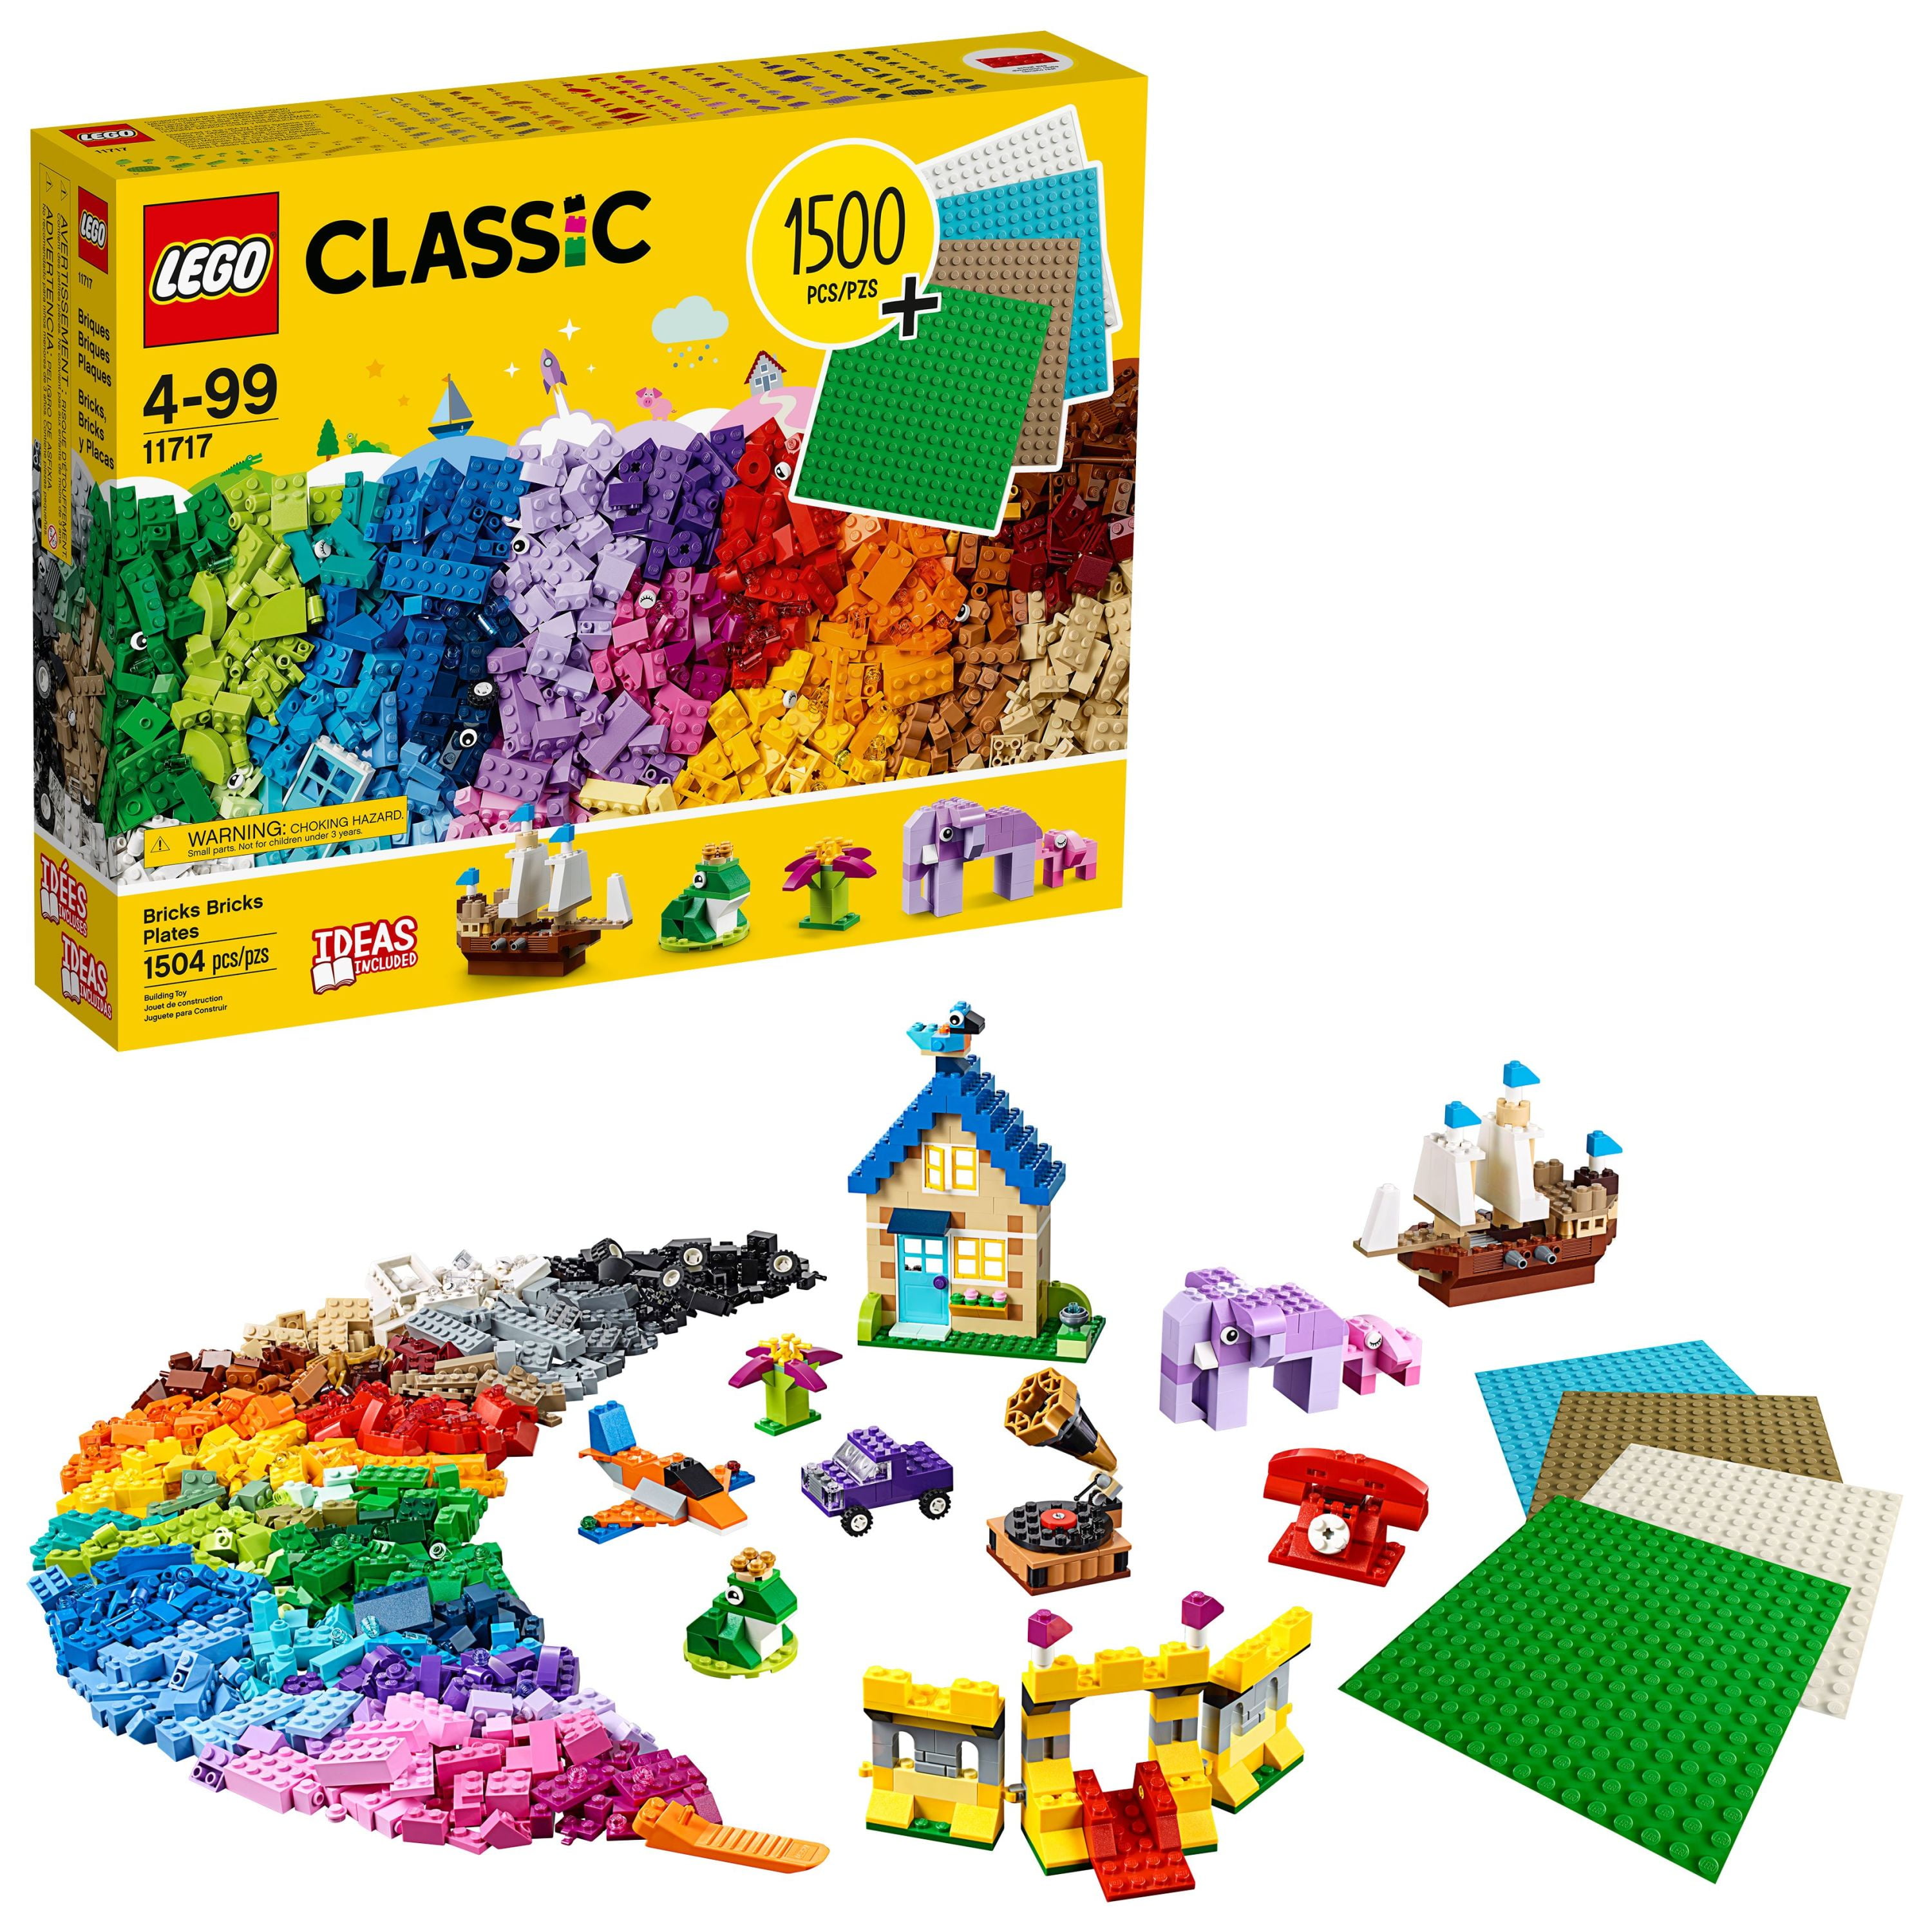 Pochette multicolore fait avec LEGO® briques livraison gratuite